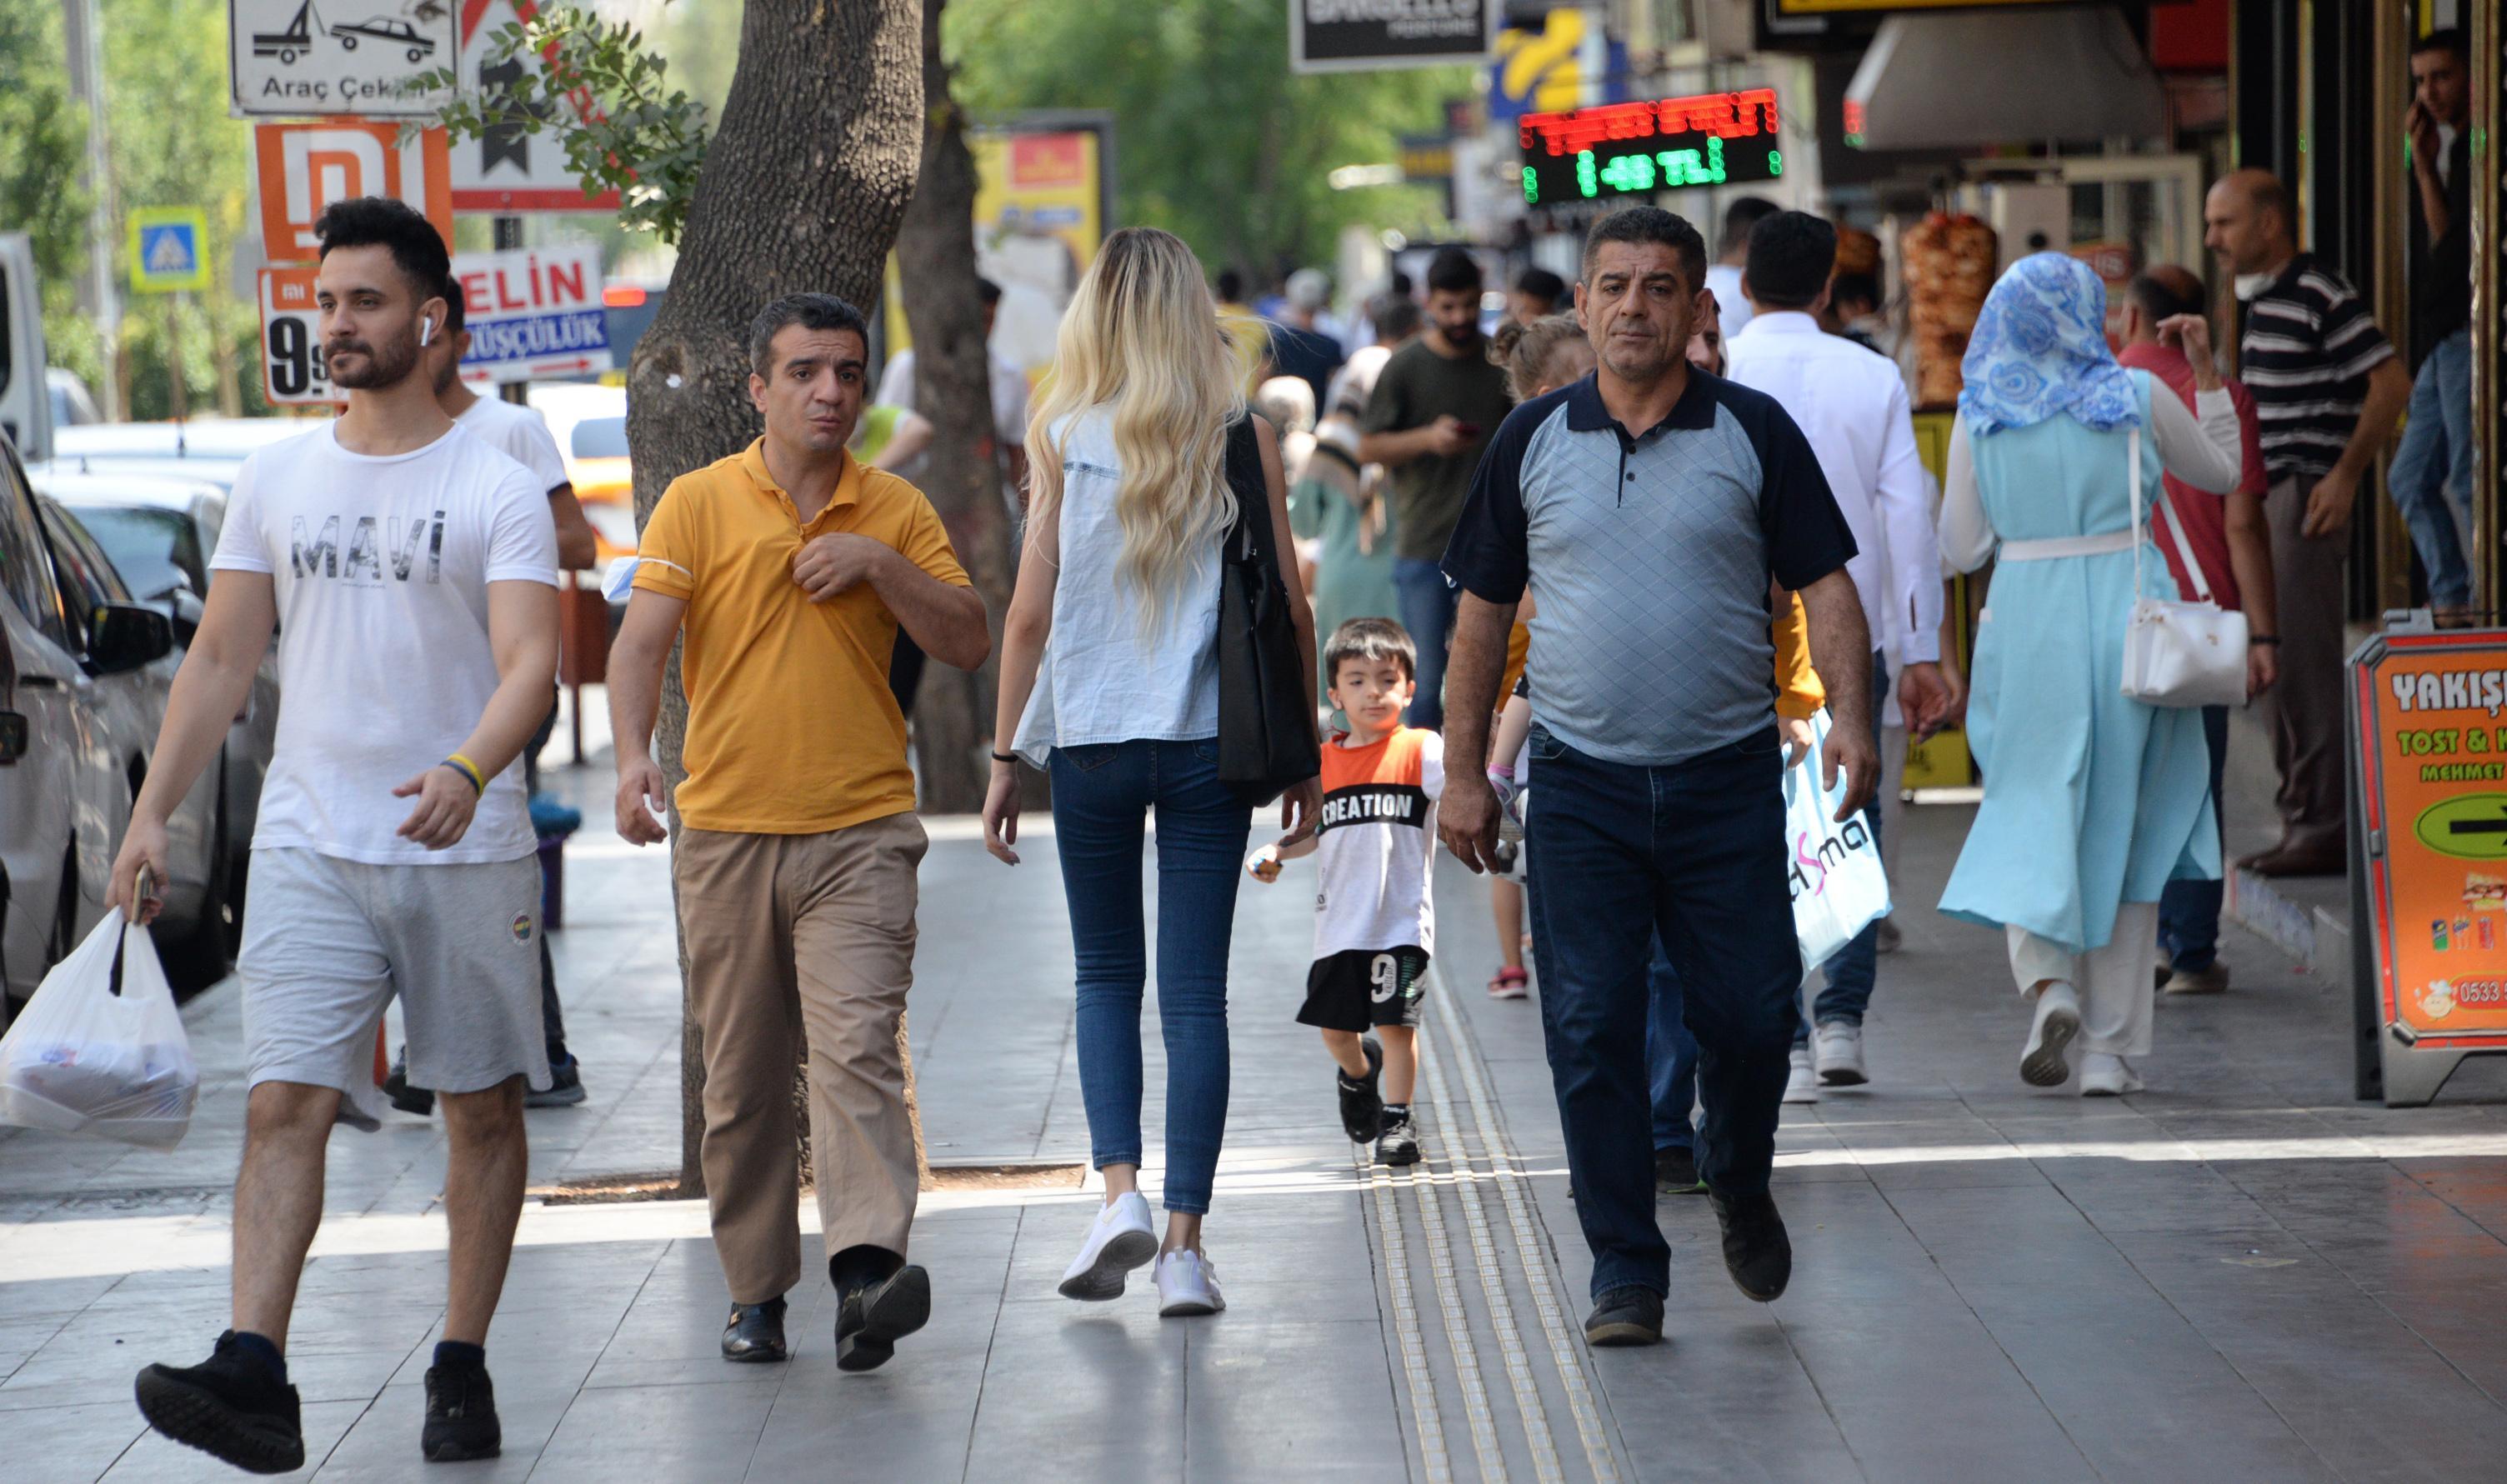 Türkiyede en az aşının uygulandığı Diyarbakırda aşı seferberliği başlatıldı